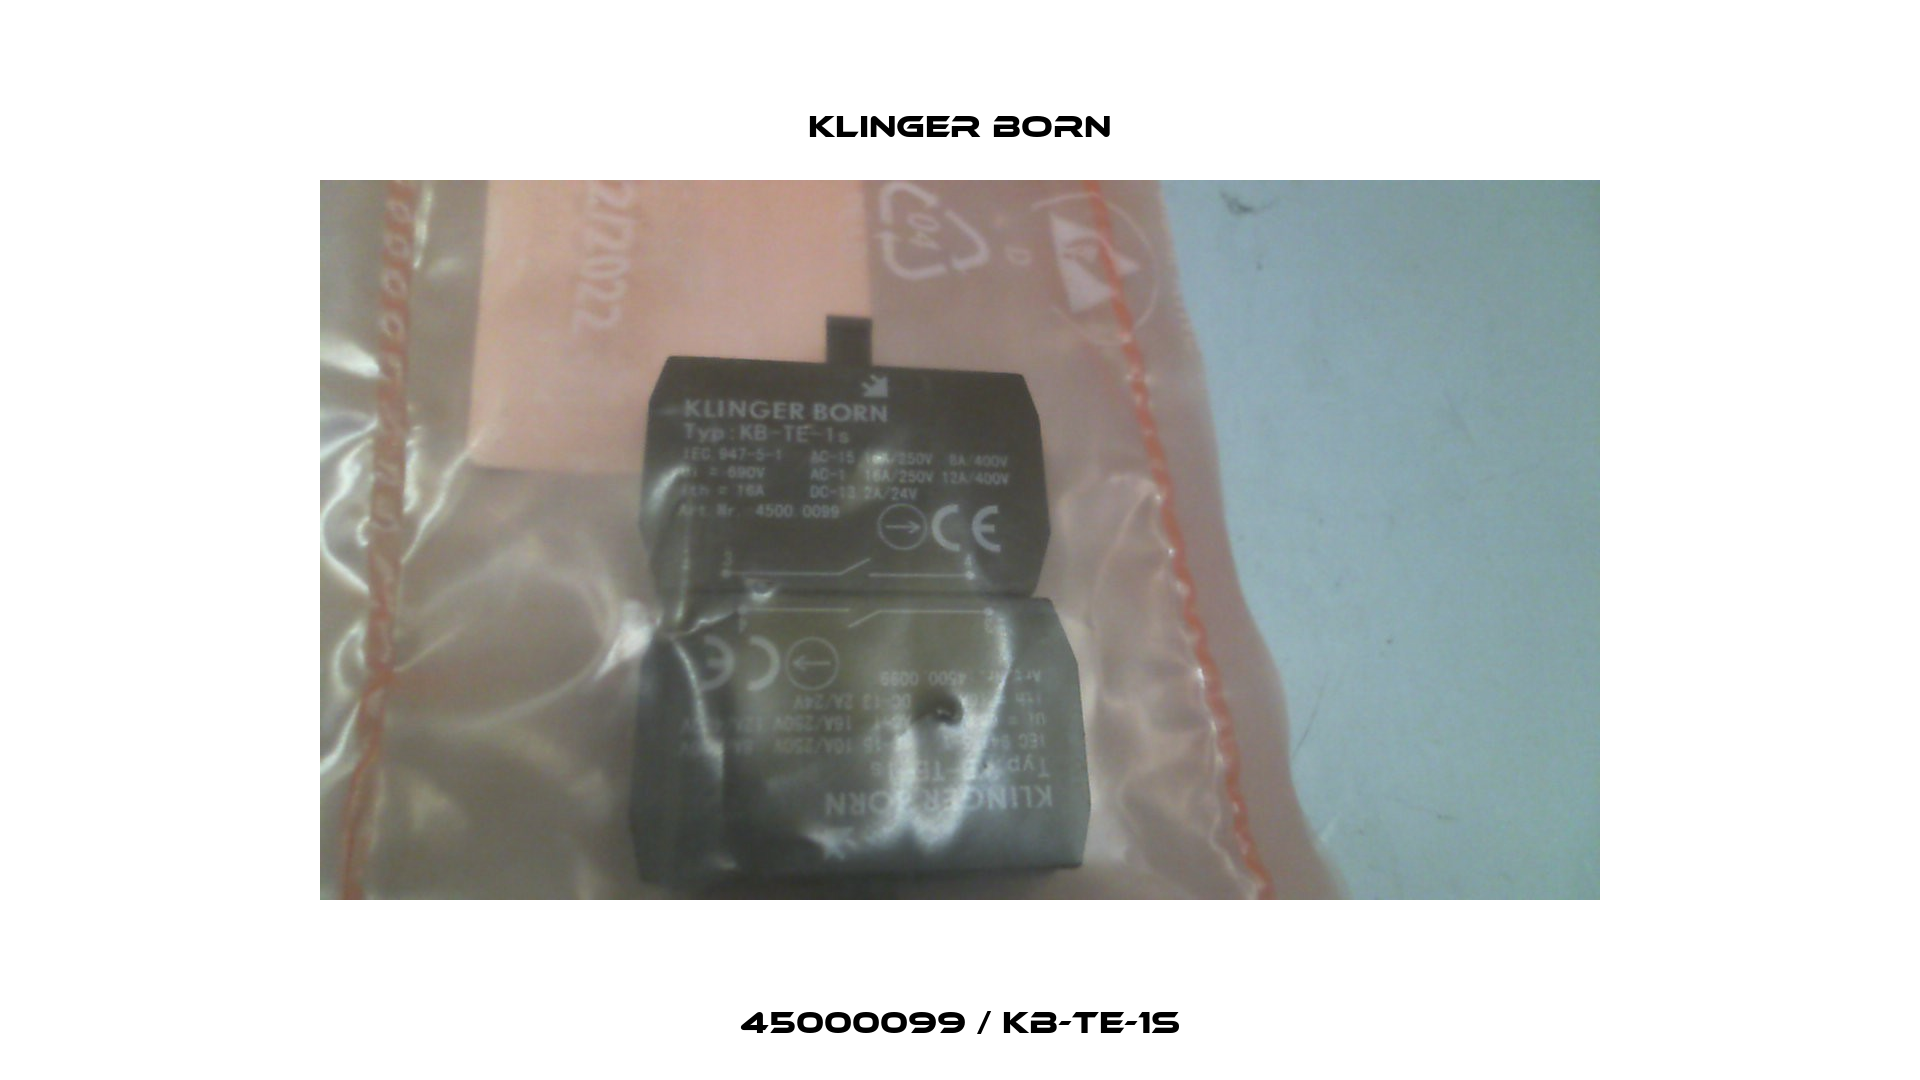 45000099 / KB-TE-1s Klinger Born